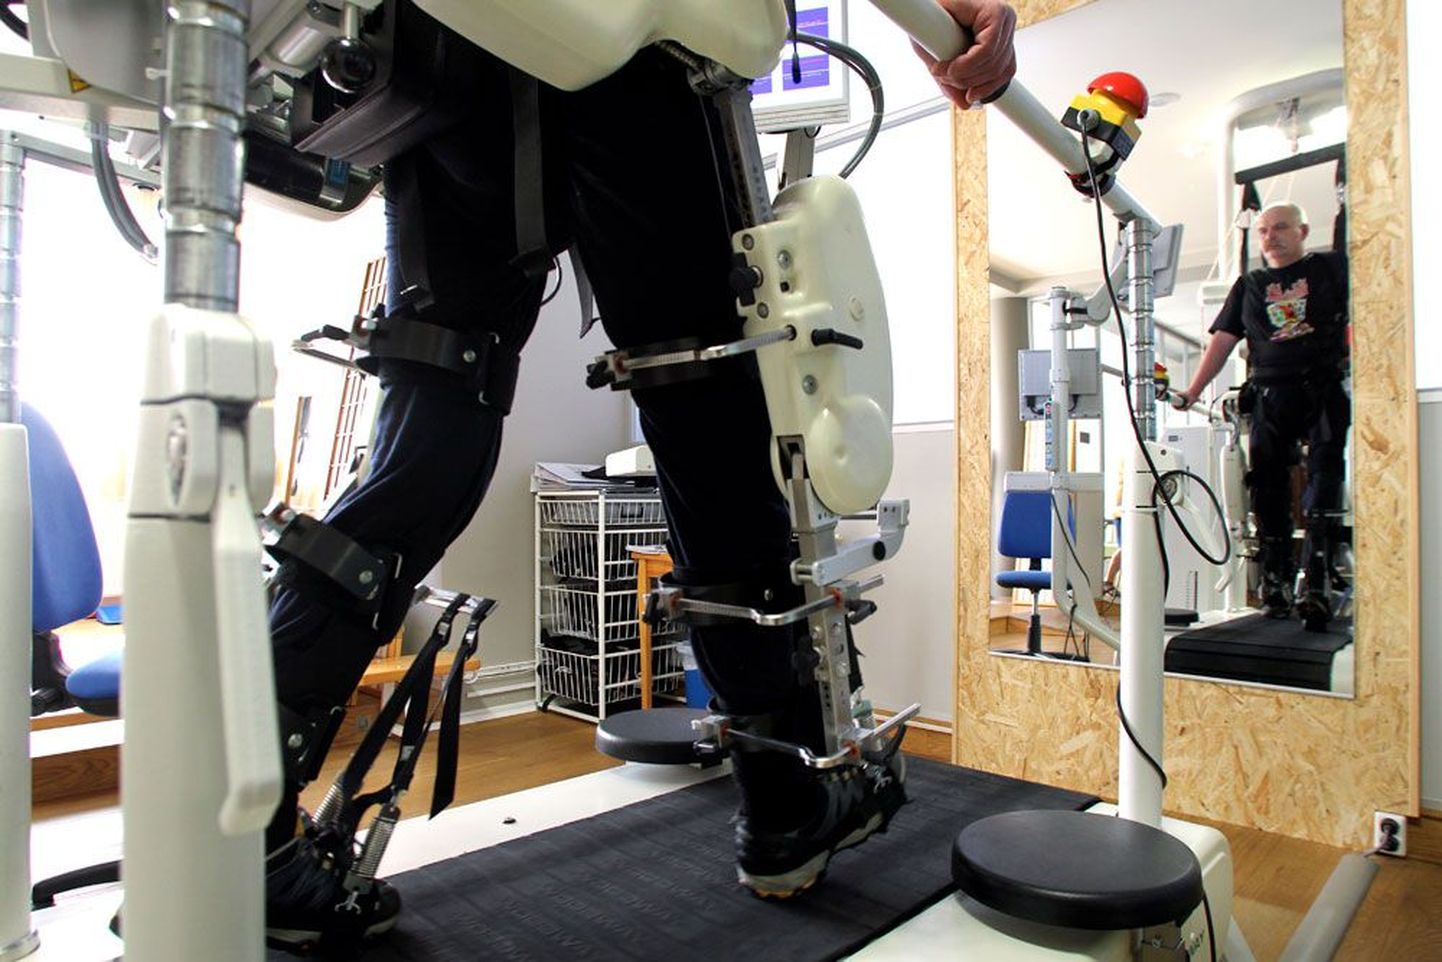 Райво Рынгас восстанавливает навыки ходьбы с помощью специального робота в центре Adeli. Райво действительно нуждается в этой реабилитационной услуге.